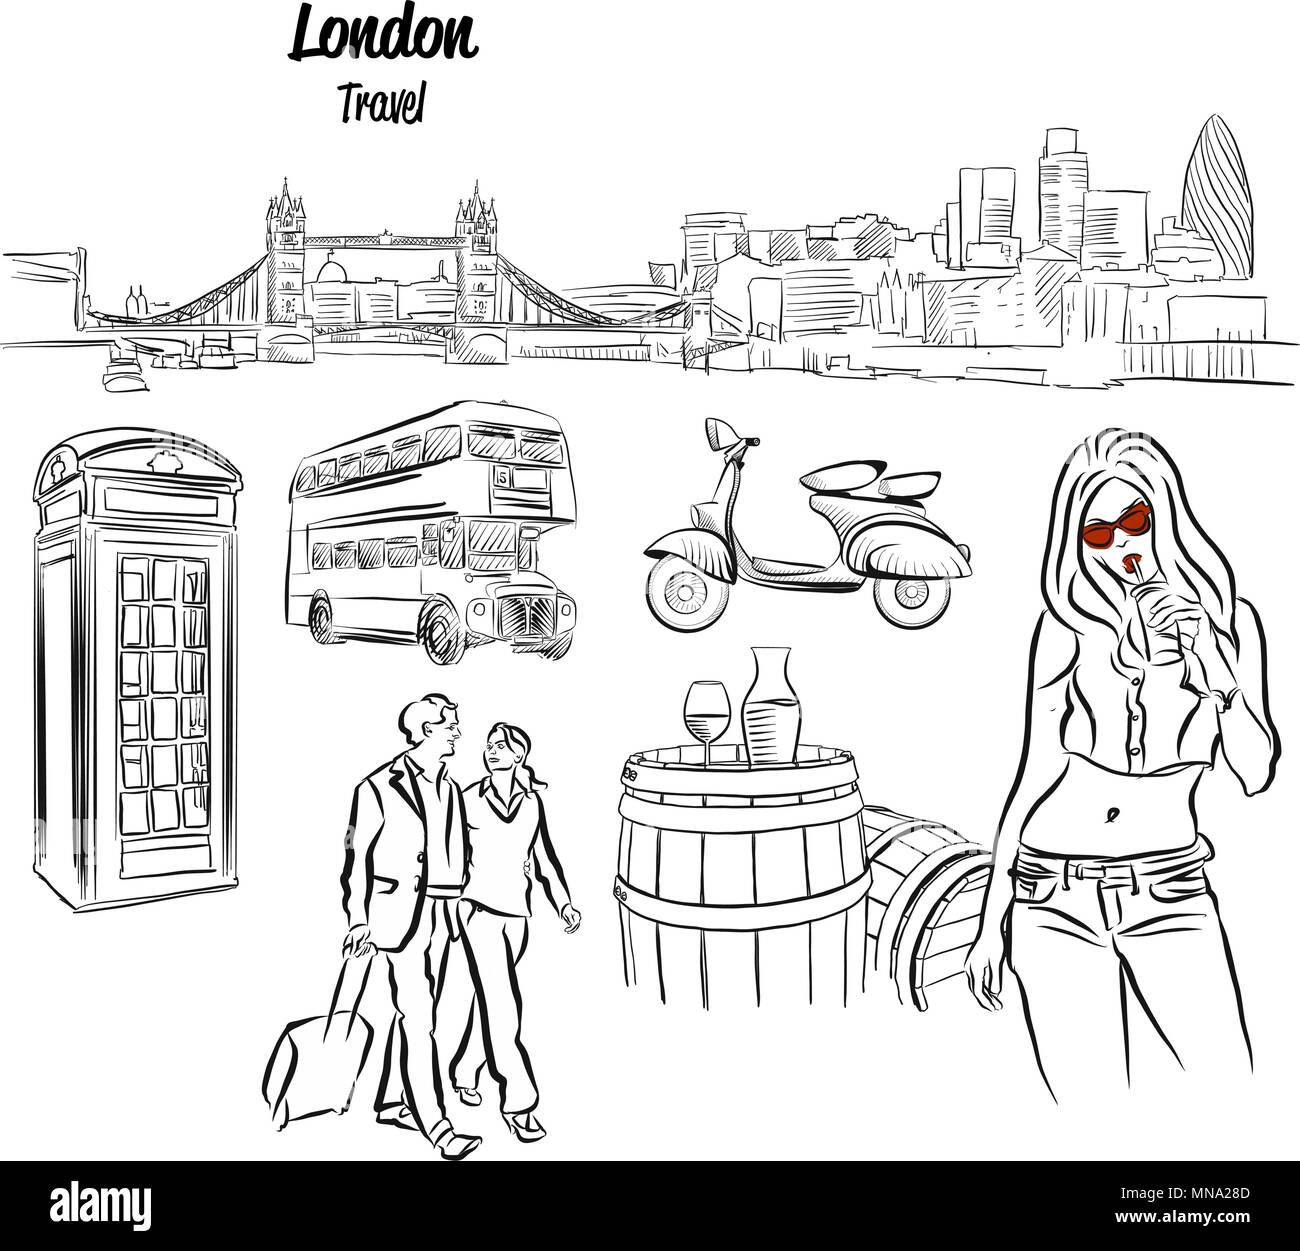 Panorama de Londres y viajes iconos bocetos dibujados a mano, contorno vectorial ilustraciones Ilustración del Vector